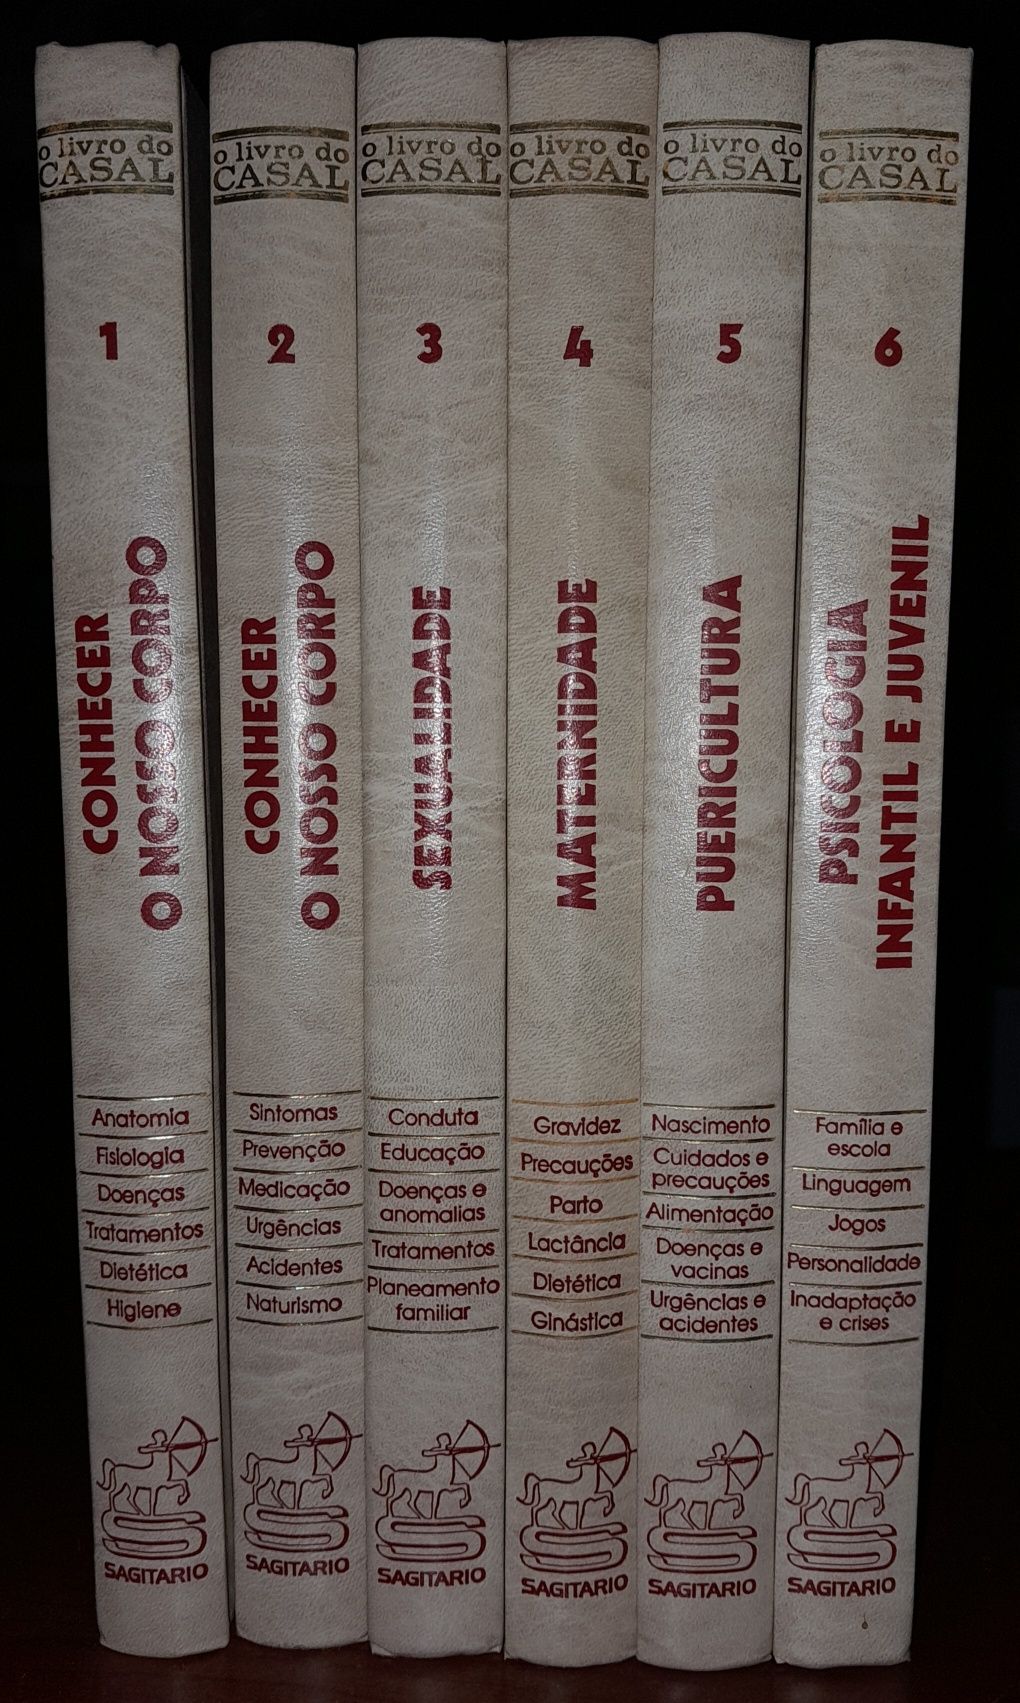 6 volumes da enciclopédia - O livro do casal